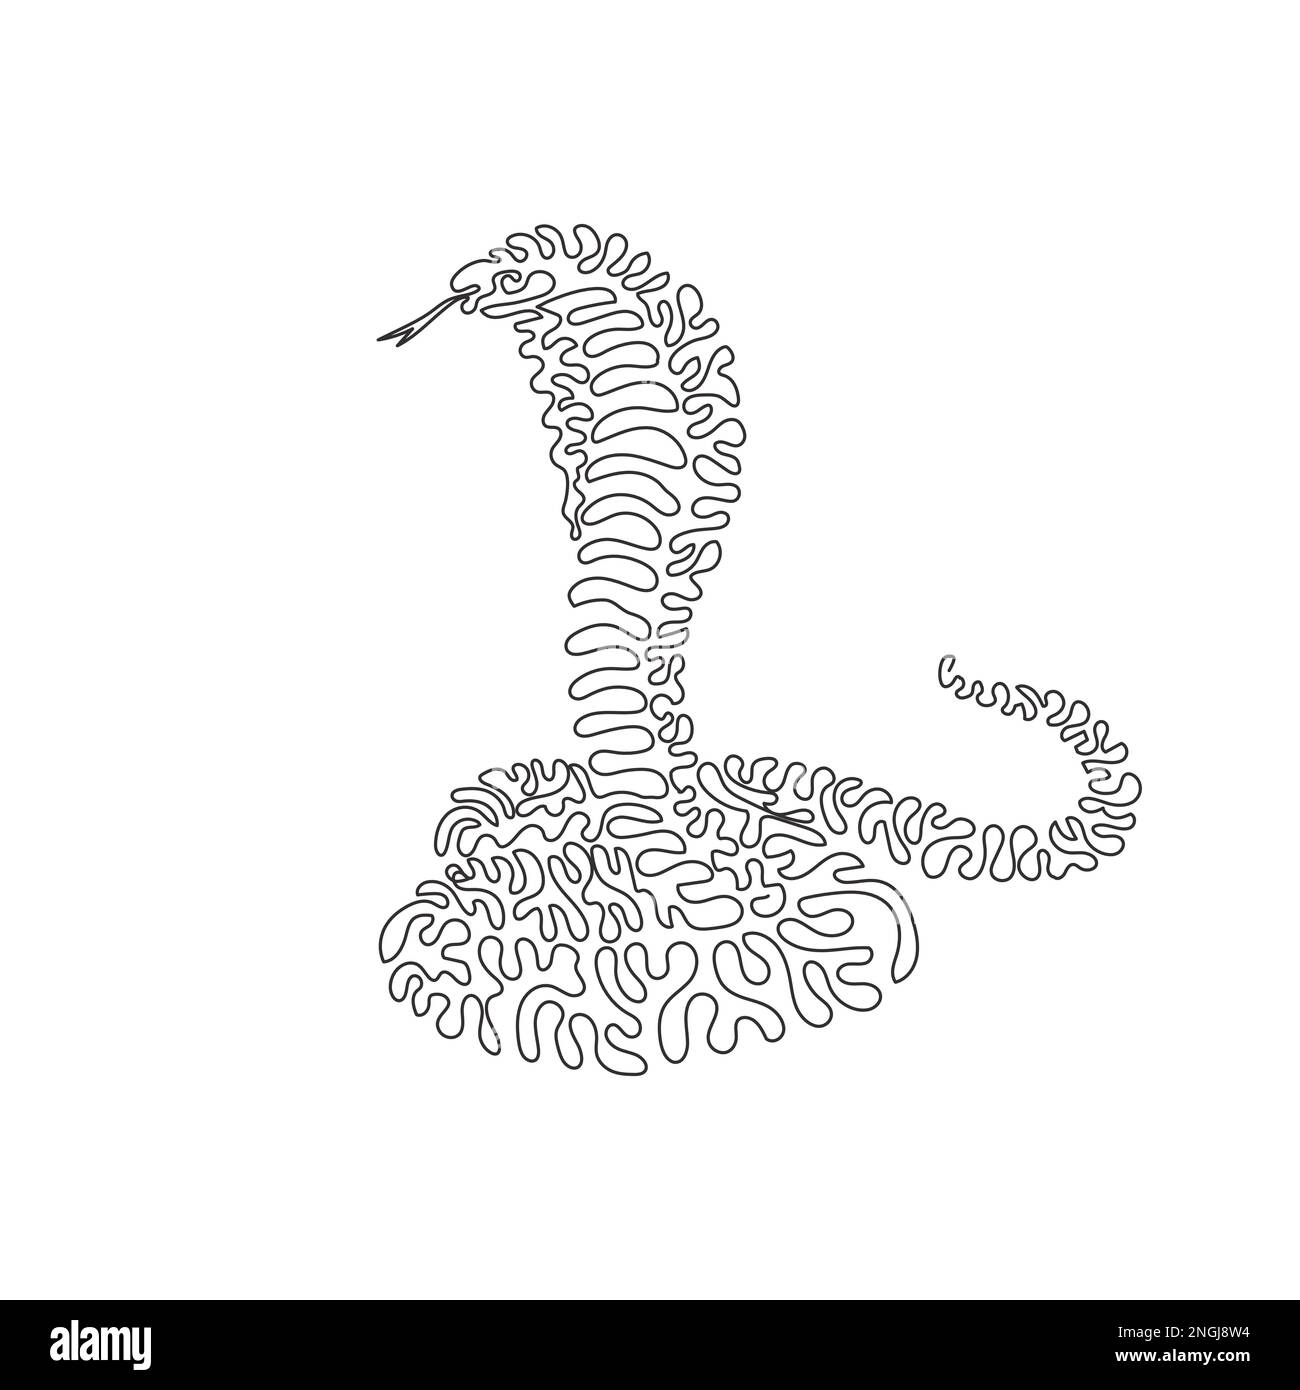 Simple curly une ligne de dessin d'un cobra de roi. Dessin de ligne continue illustration vectorielle de cobra élargit les côtes du cou pour former une cagoule Illustration de Vecteur